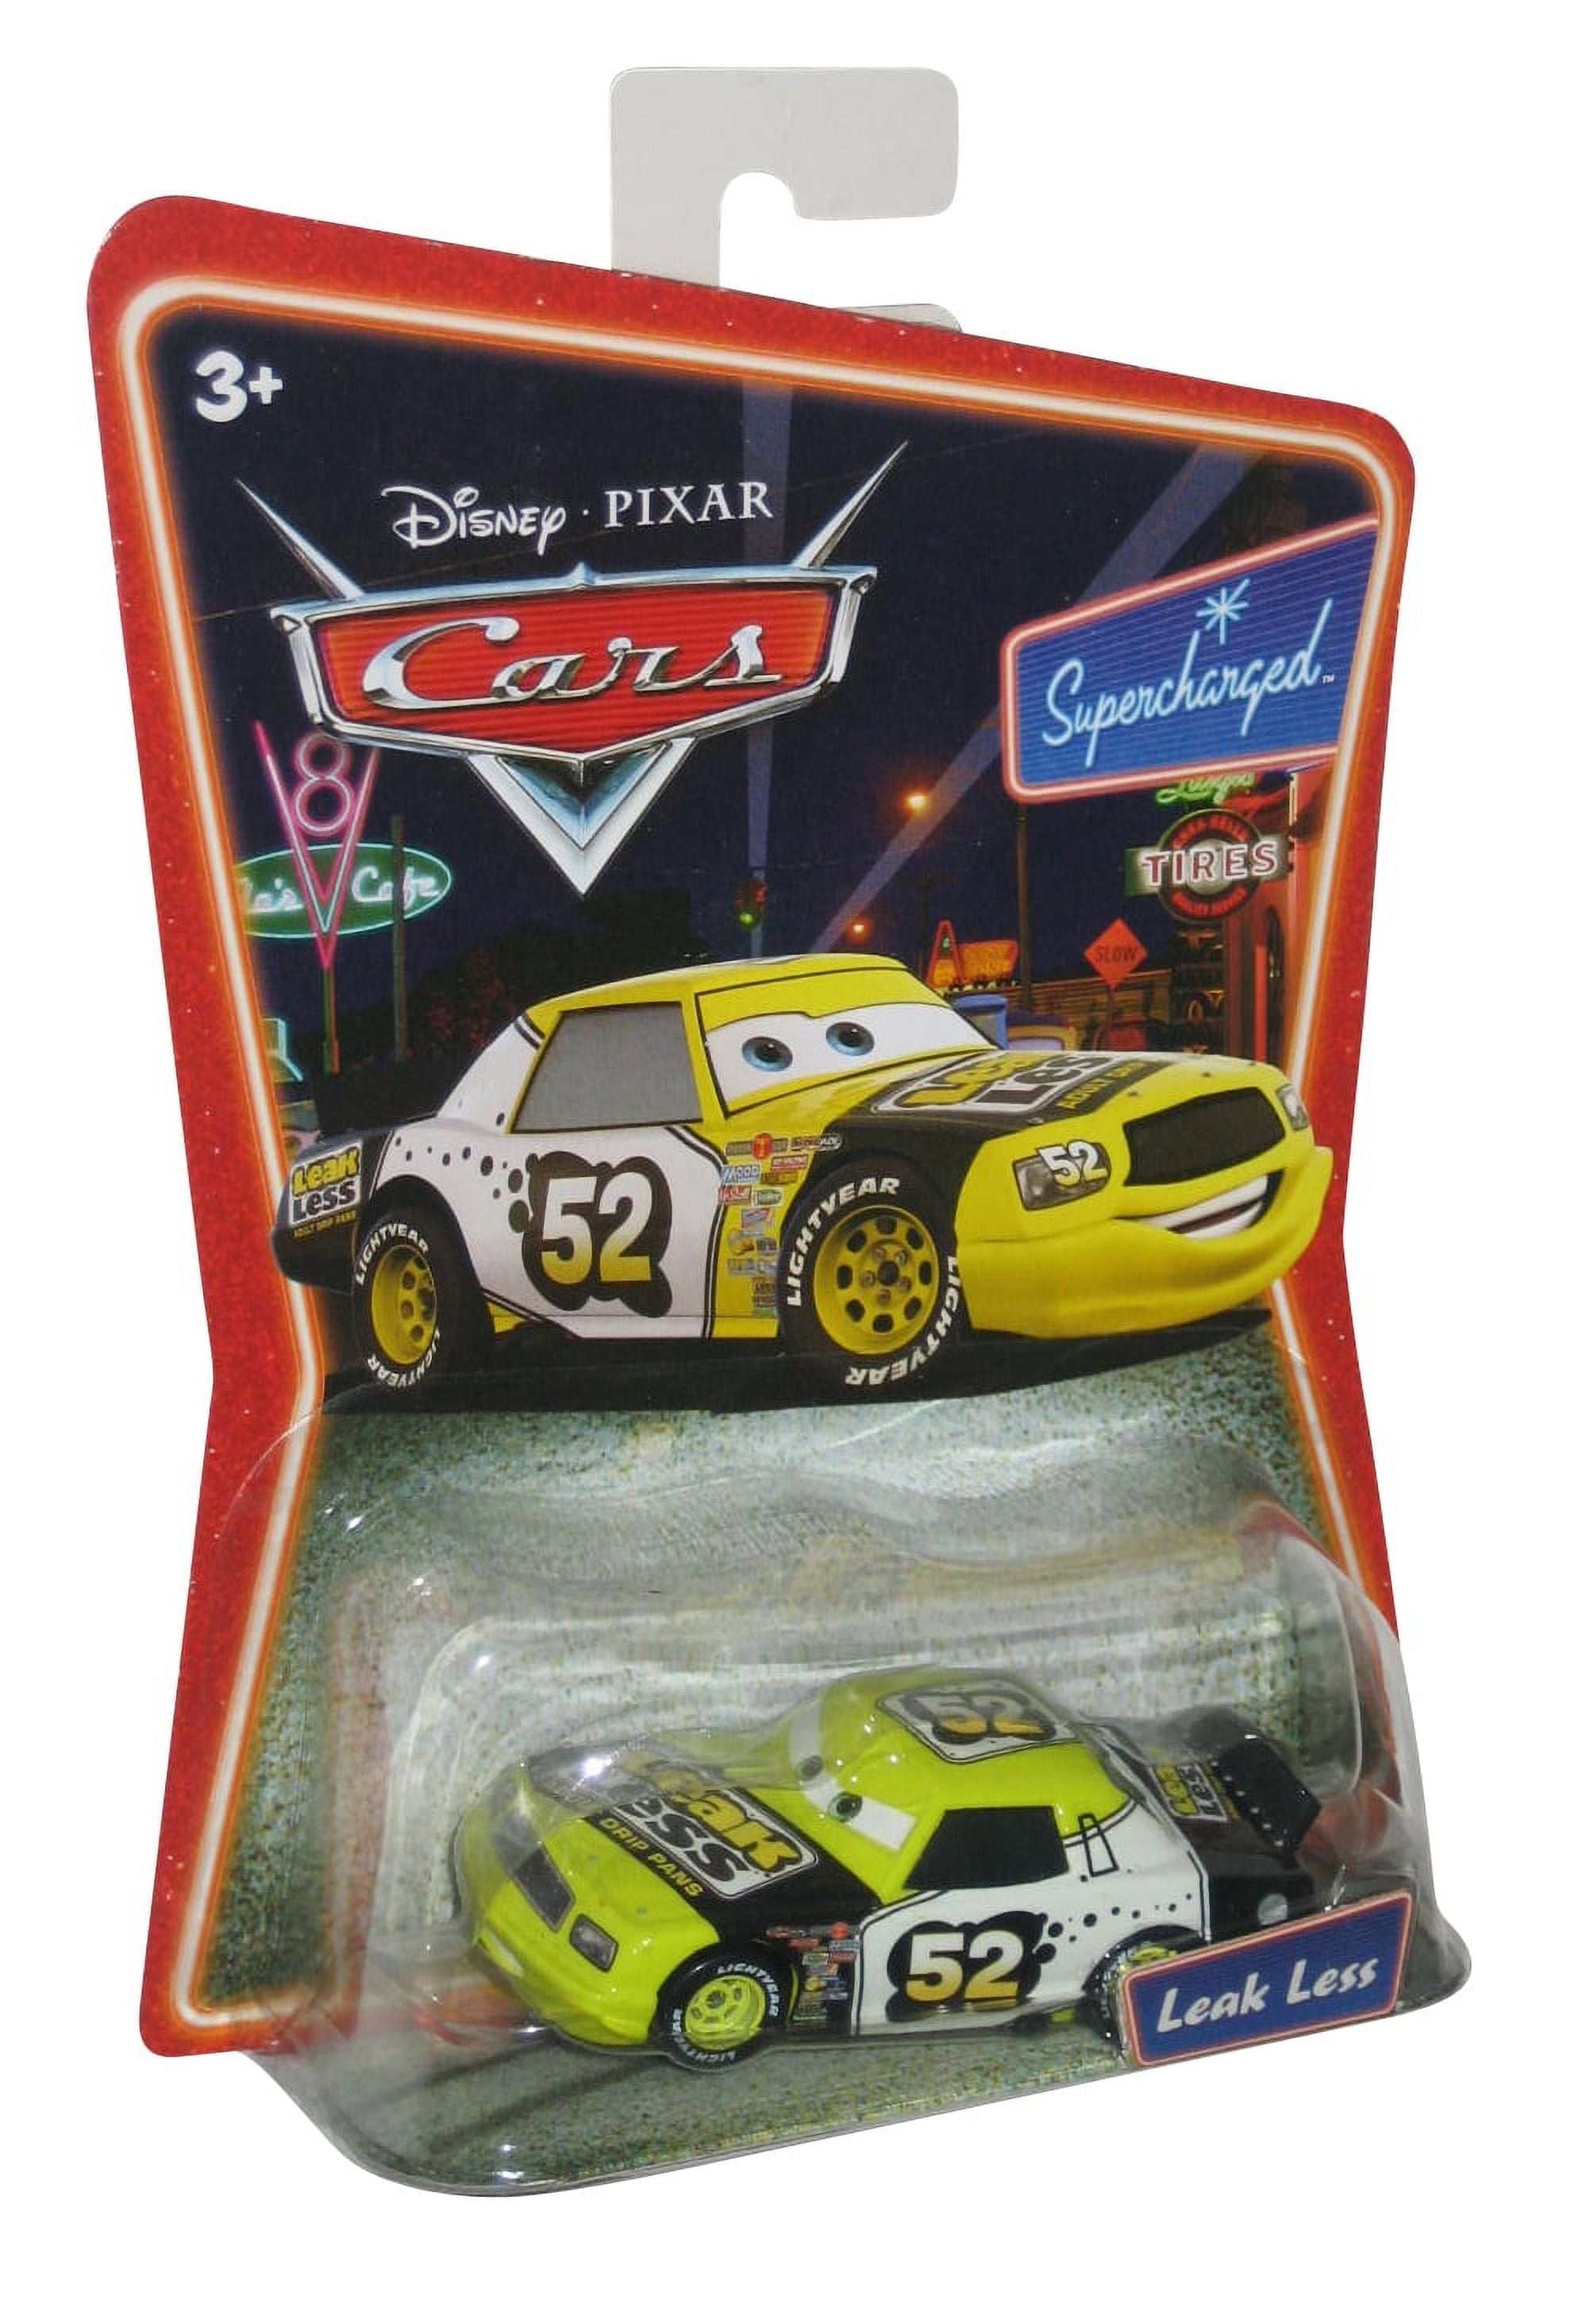 Disney Pixar Cars Leak Less Supercharged Mattel Die Cast Toy Car